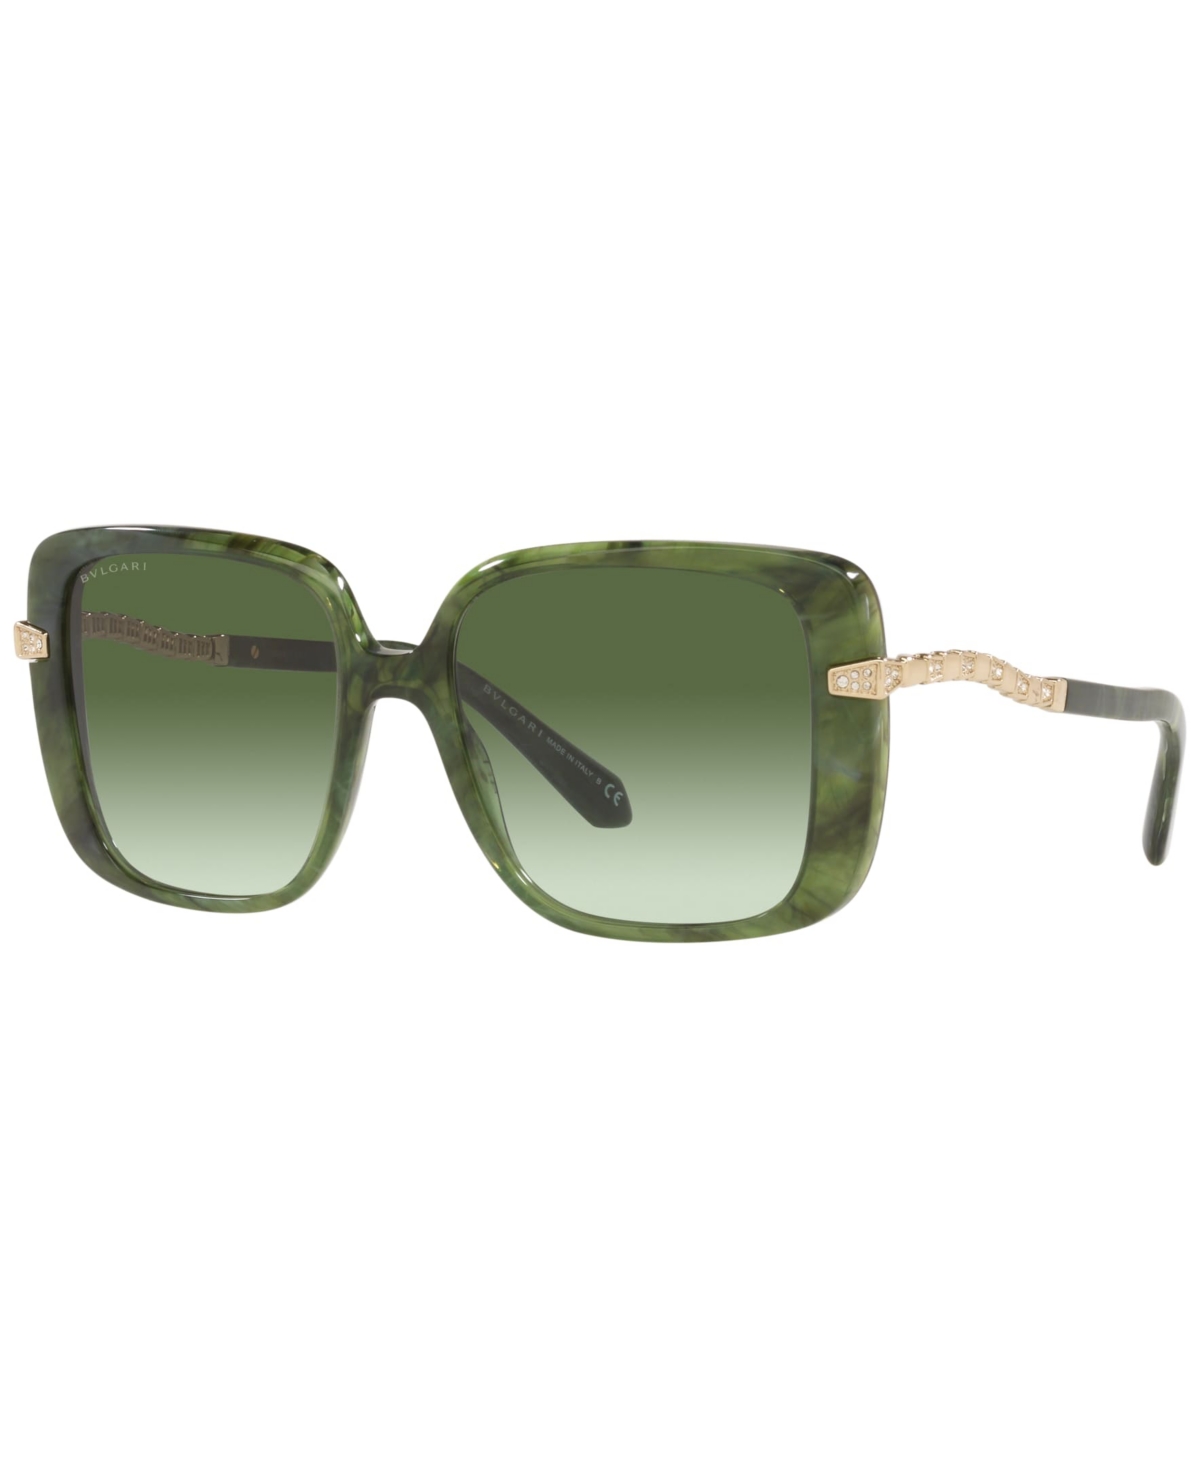 Bvlgari Women's Sunglasses, Bv8237b In Marble Green